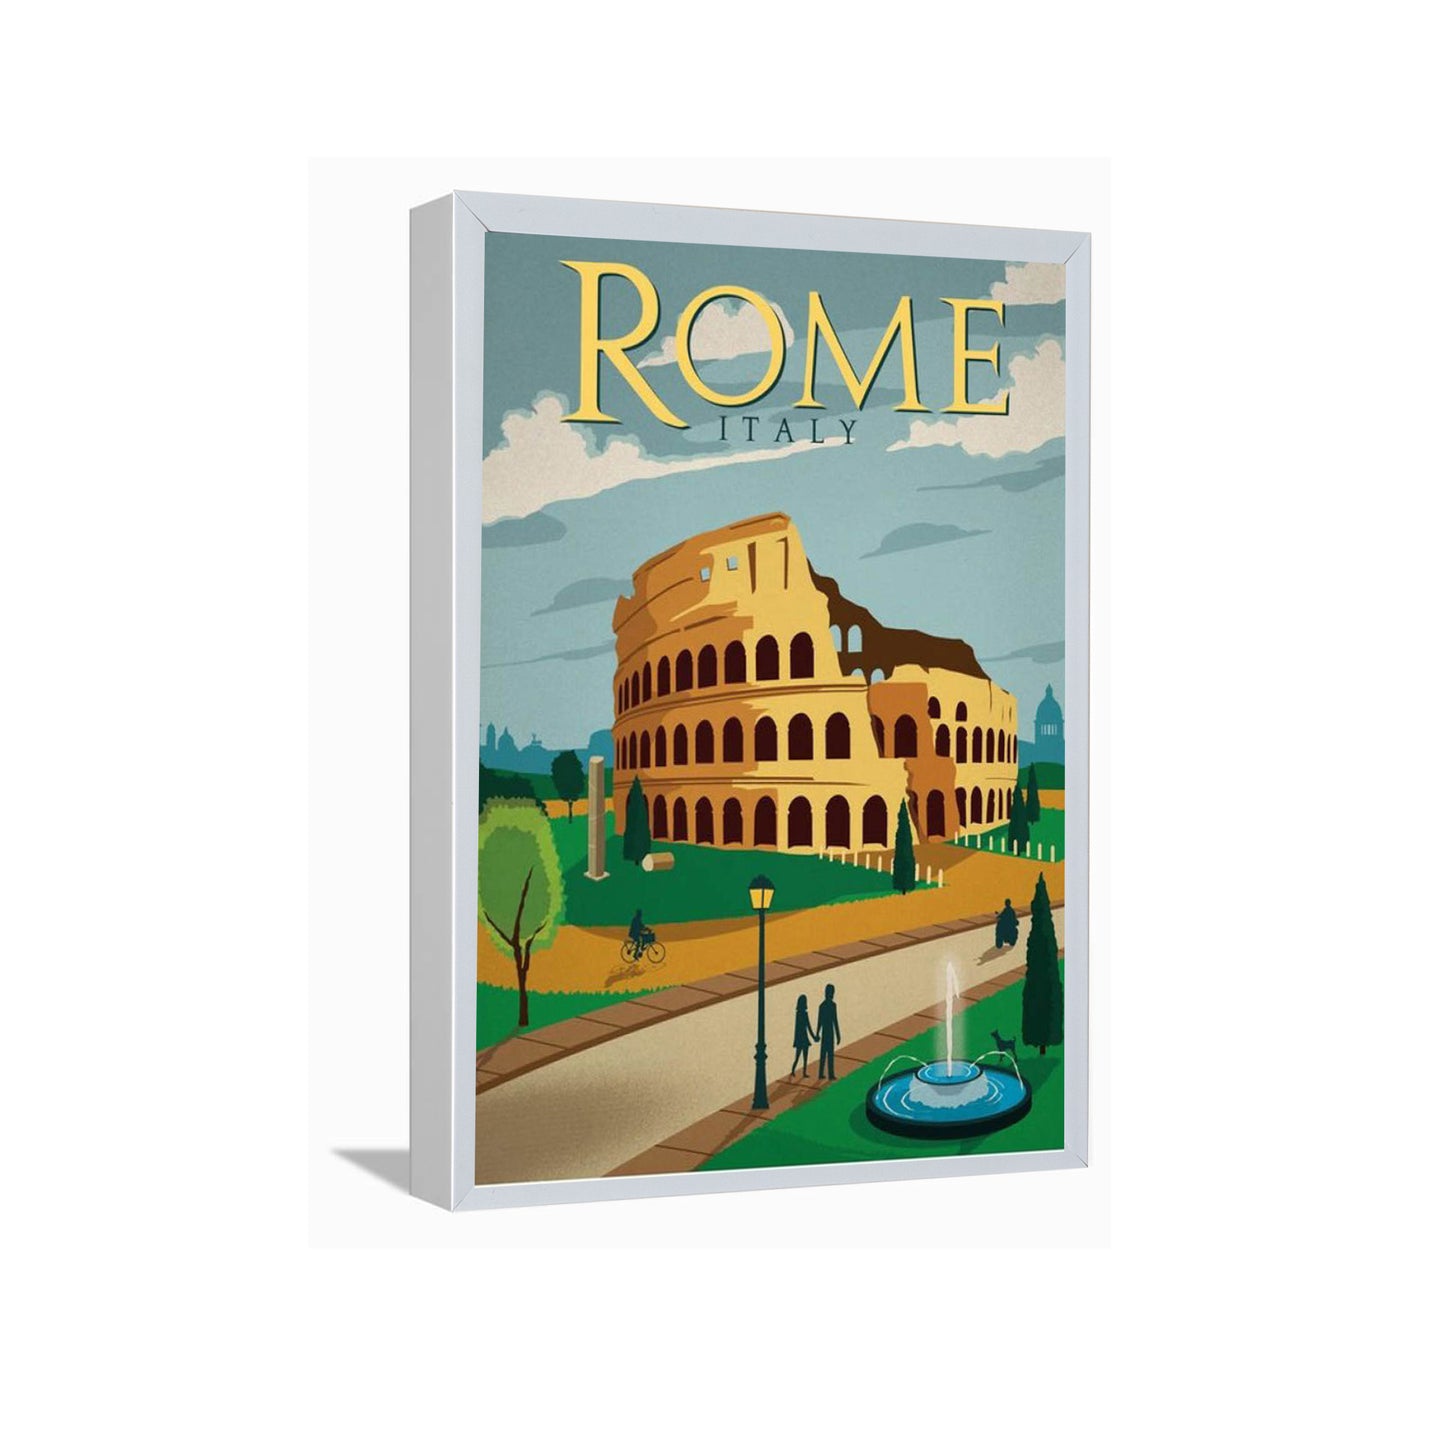 Rome Italy---